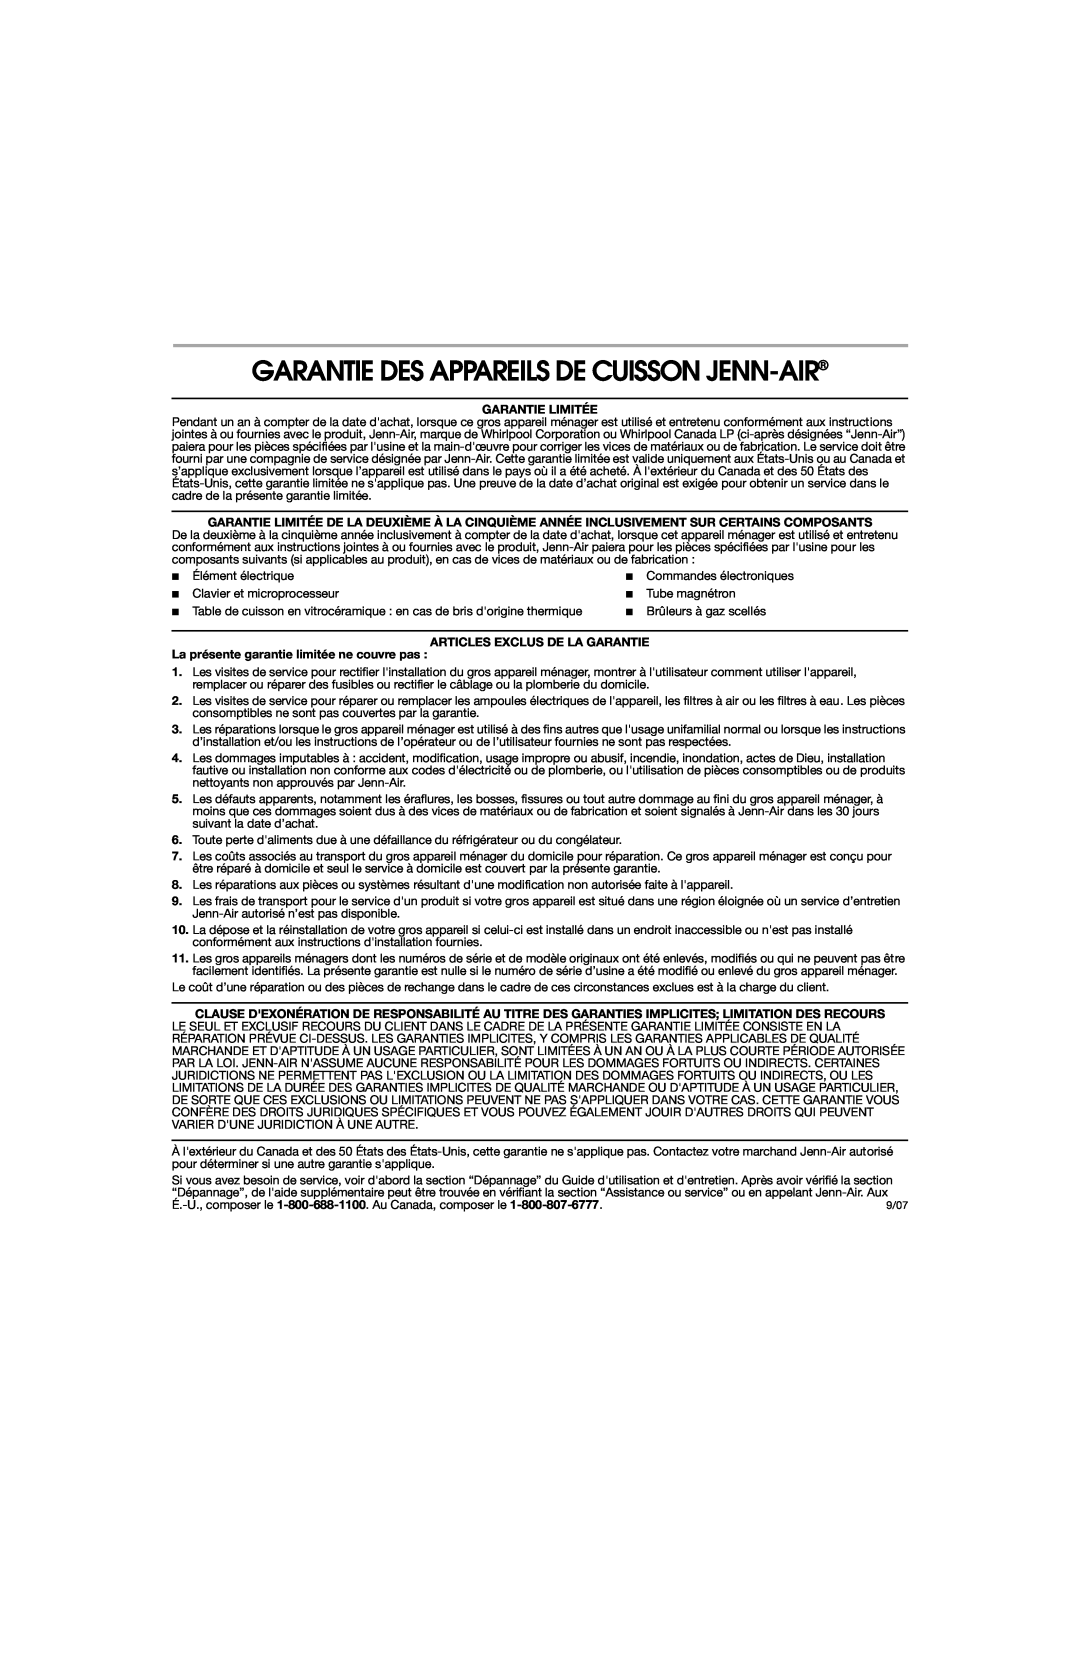 Jenn-Air 8113P757-60 Garantie Des Appareils De Cuisson Jenn-Air, Garantie Limitée, Articles Exclus De La Garantie 